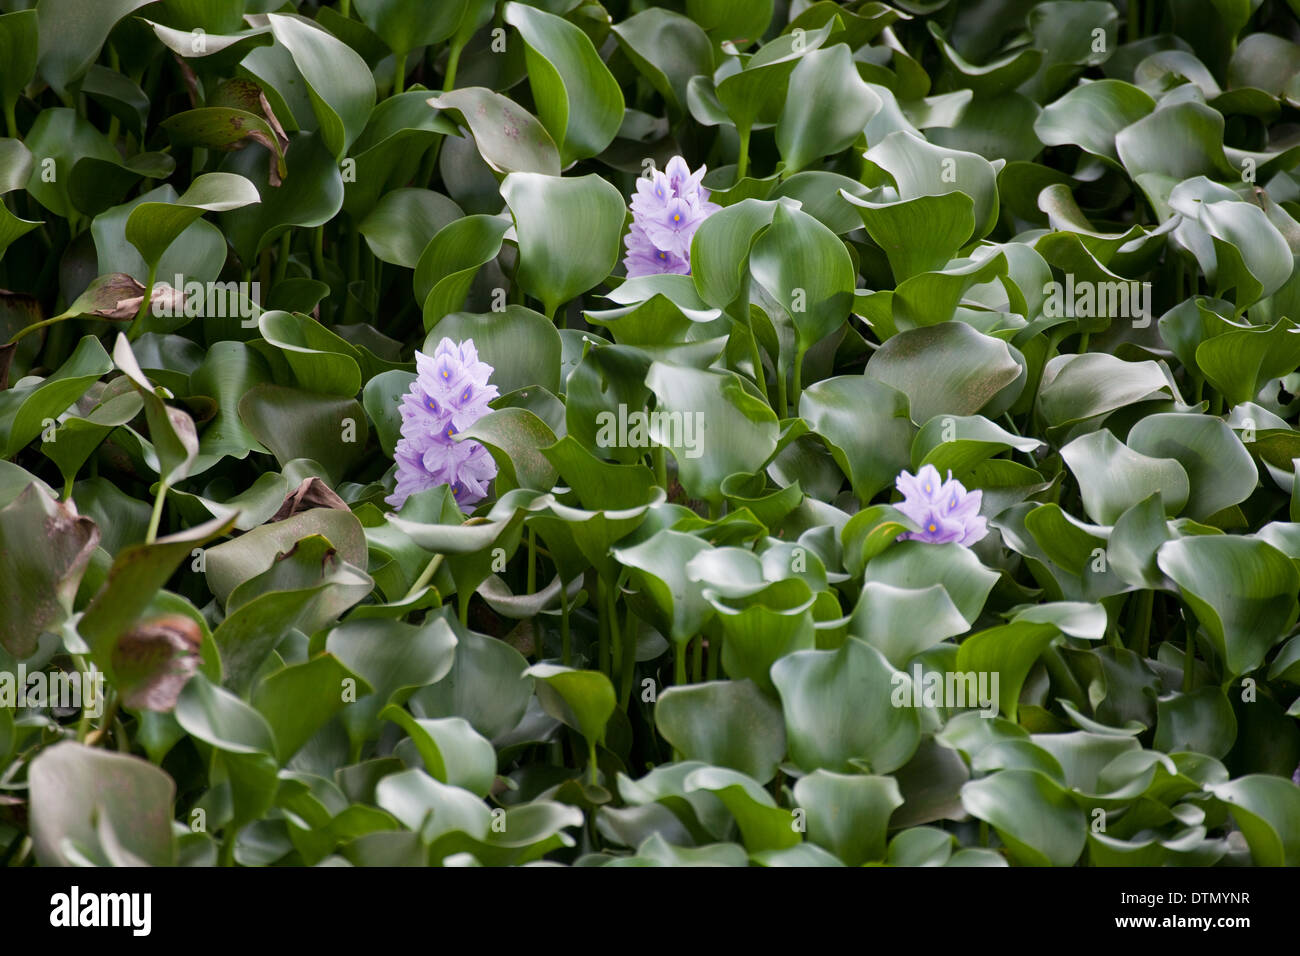 Jacinthe d'eau (Eichornia crassipes). Originaire d'Amazonie. Ici a envahi un réservoir au Costa Rica un près de masse solide. Banque D'Images